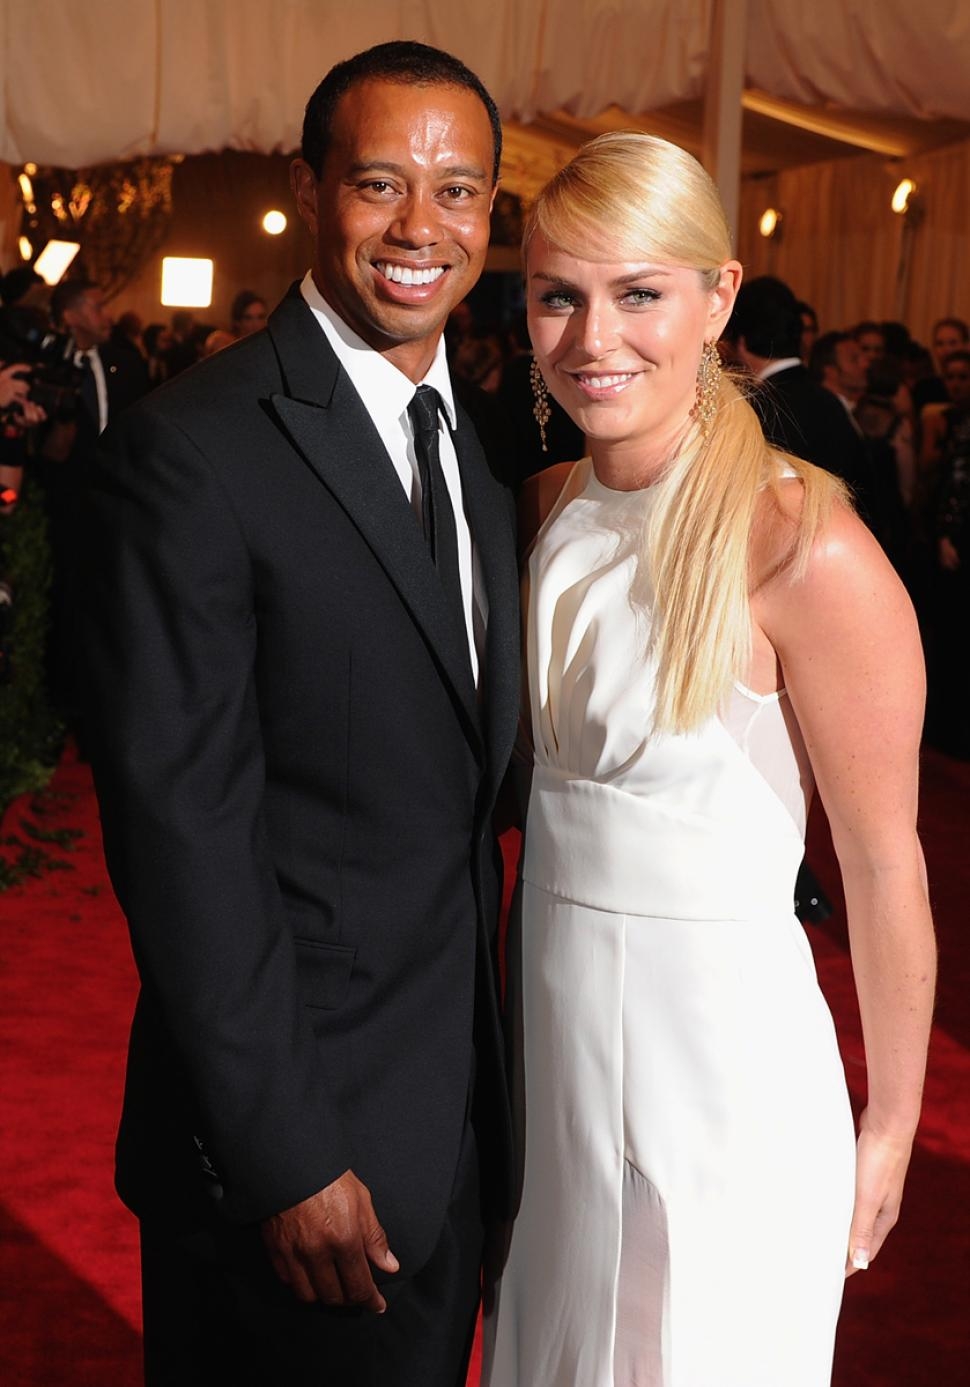 
	
	Từ chiến thắng sau những lần thi đấu và các hợp đồng quảng cáo, vợ chồng Tiger Woods và Lindsey Vonn đã thu về hơn 503 triệu USD.